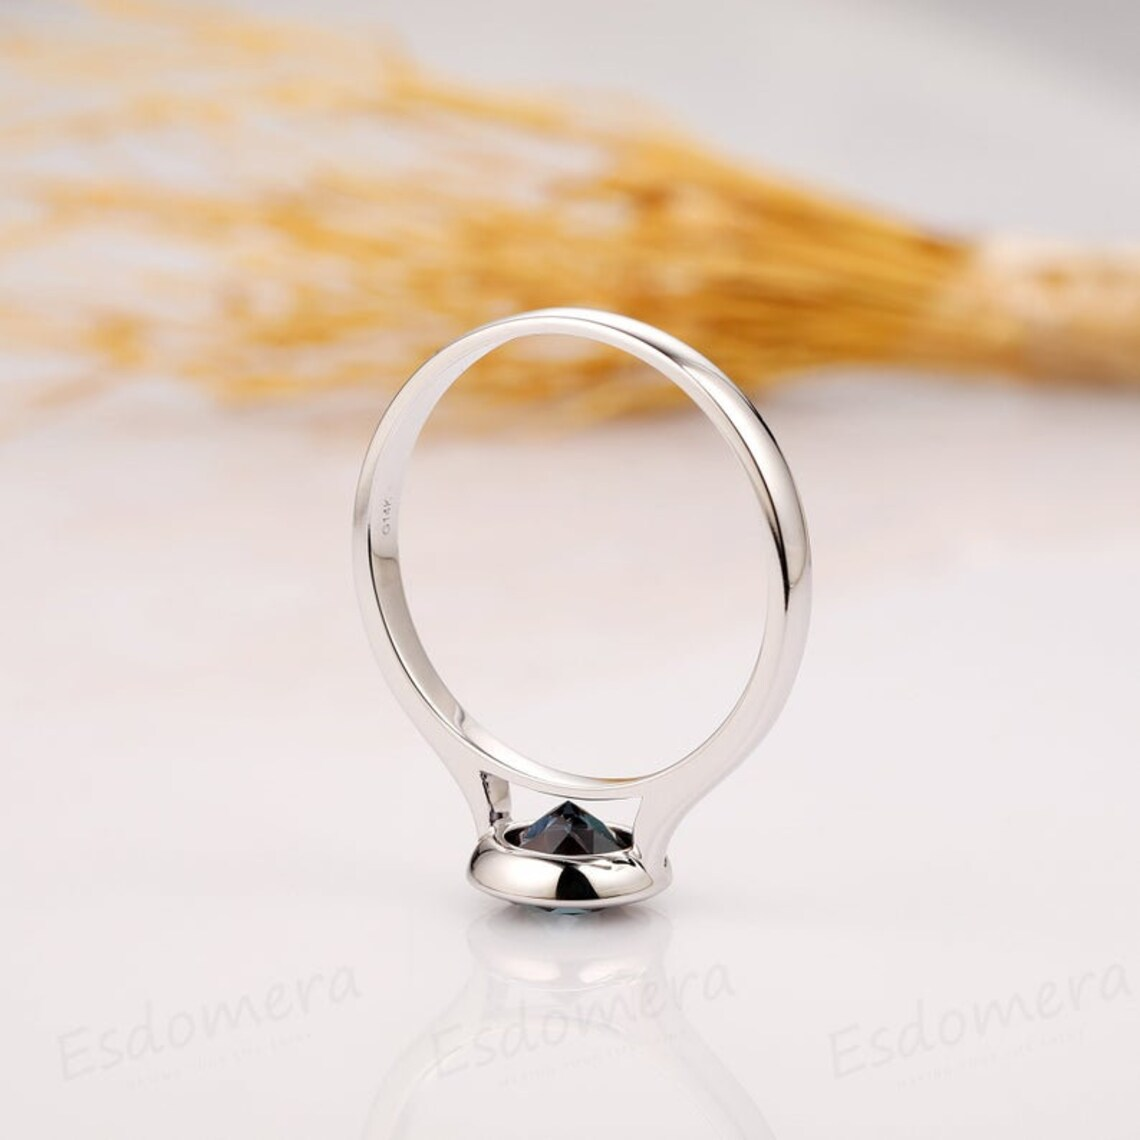 Round Cut 1.5CT Alexandrite Wedding Ring, 14k Rose Gold Engagement Ring